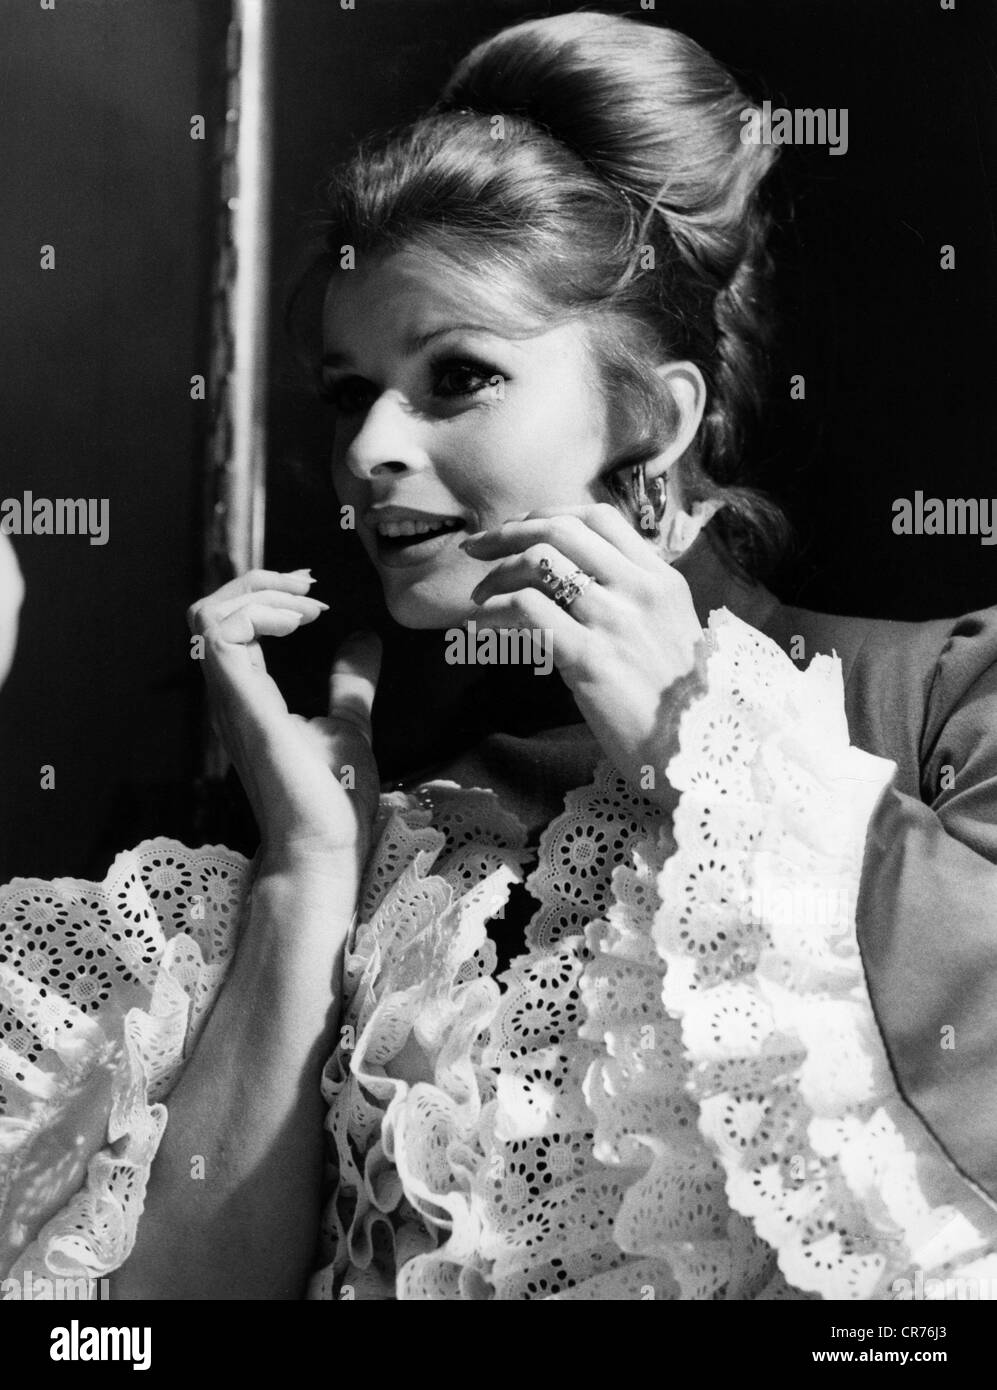 Berger, Senta, * 13.5.1941, Austrian actress, half length, 1970s, Stock Photo